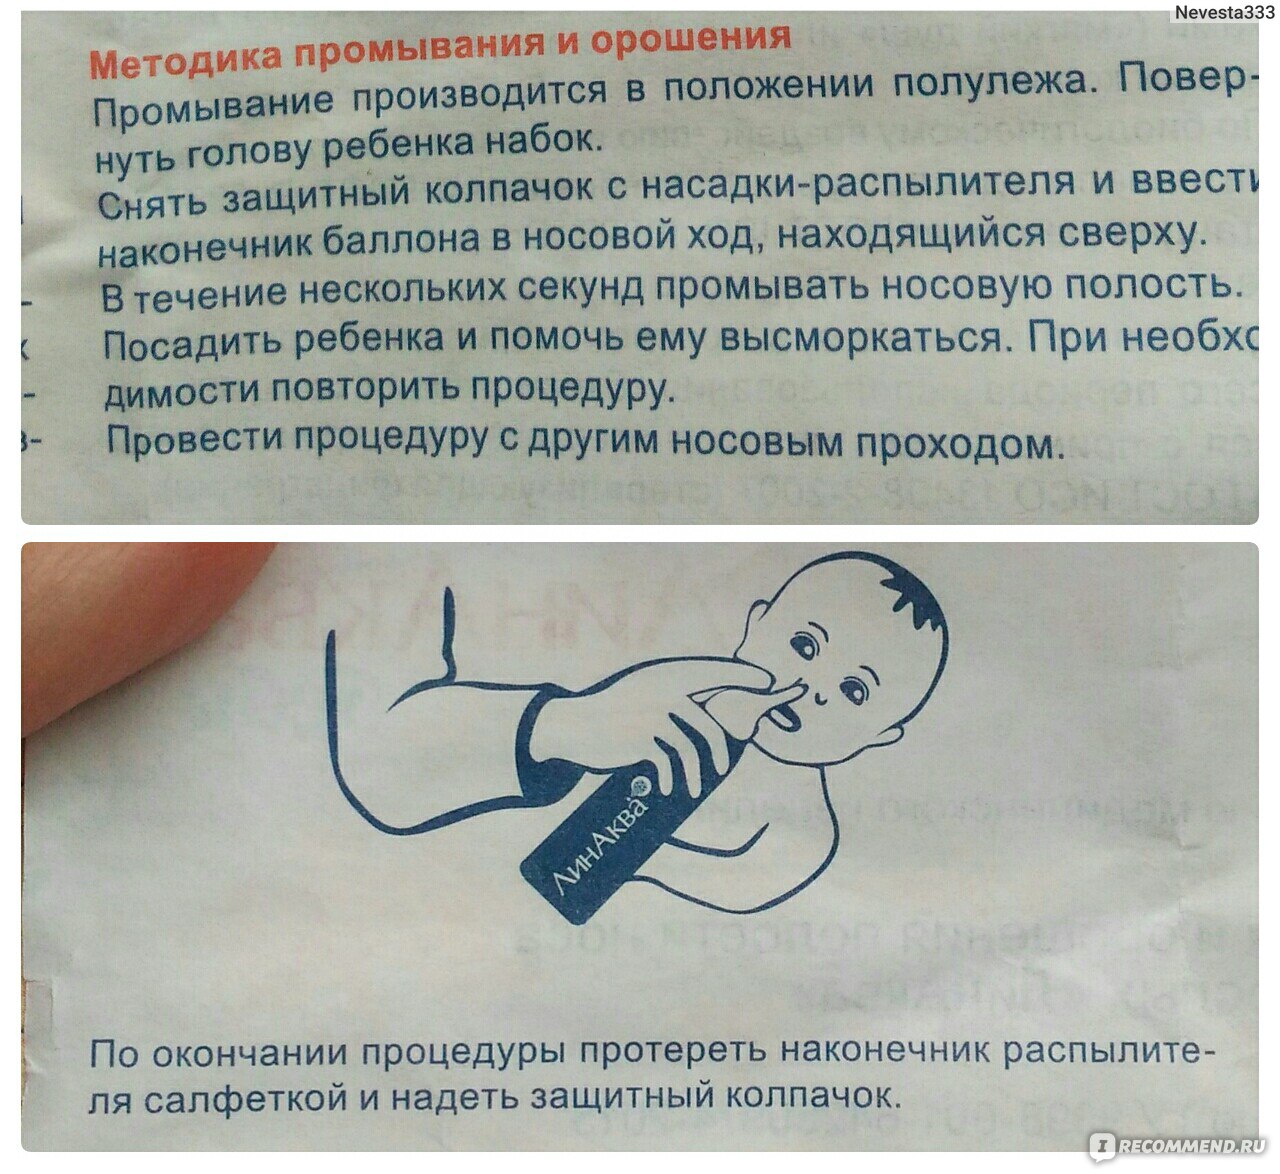 Новорожденным можно промывать. Как промывать нос. Промывание носа у грудничка аквалором. Как правильно промывать нос ребенку. Как правильно промывать нос ребёнку 2 года.